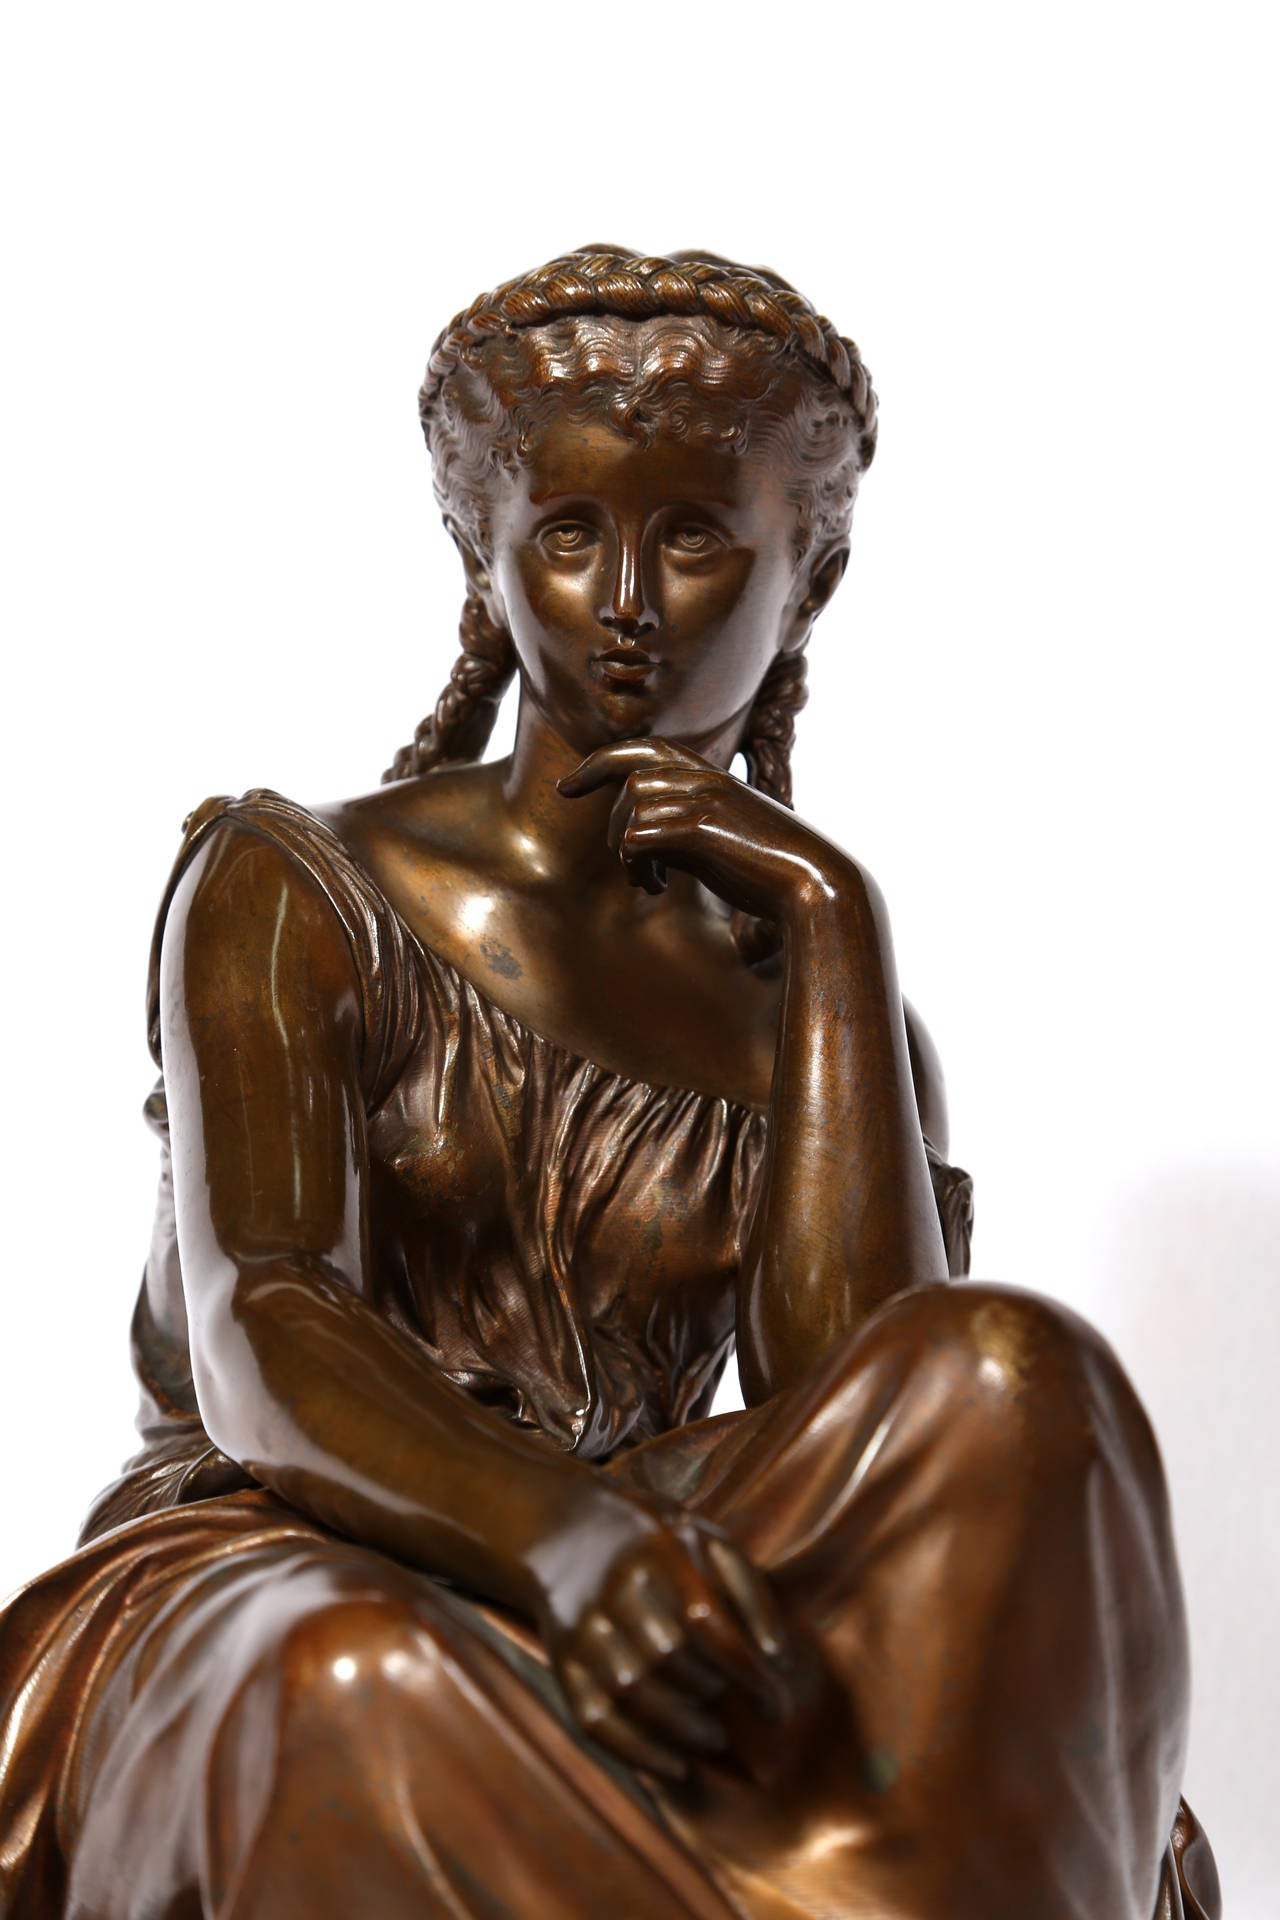 Artiste : Hippolyte Moreau, français (1832 - 1927)
Titre : Héros
Médium : Sculpture en bronze sur socle en marbre, signature inscrite
Taille : 19 x 11 x 9 in. (48,26 x 27,94 x 22,86 cm)

L'histoire d'Héro et Léandre est l'une des histoires d'amour